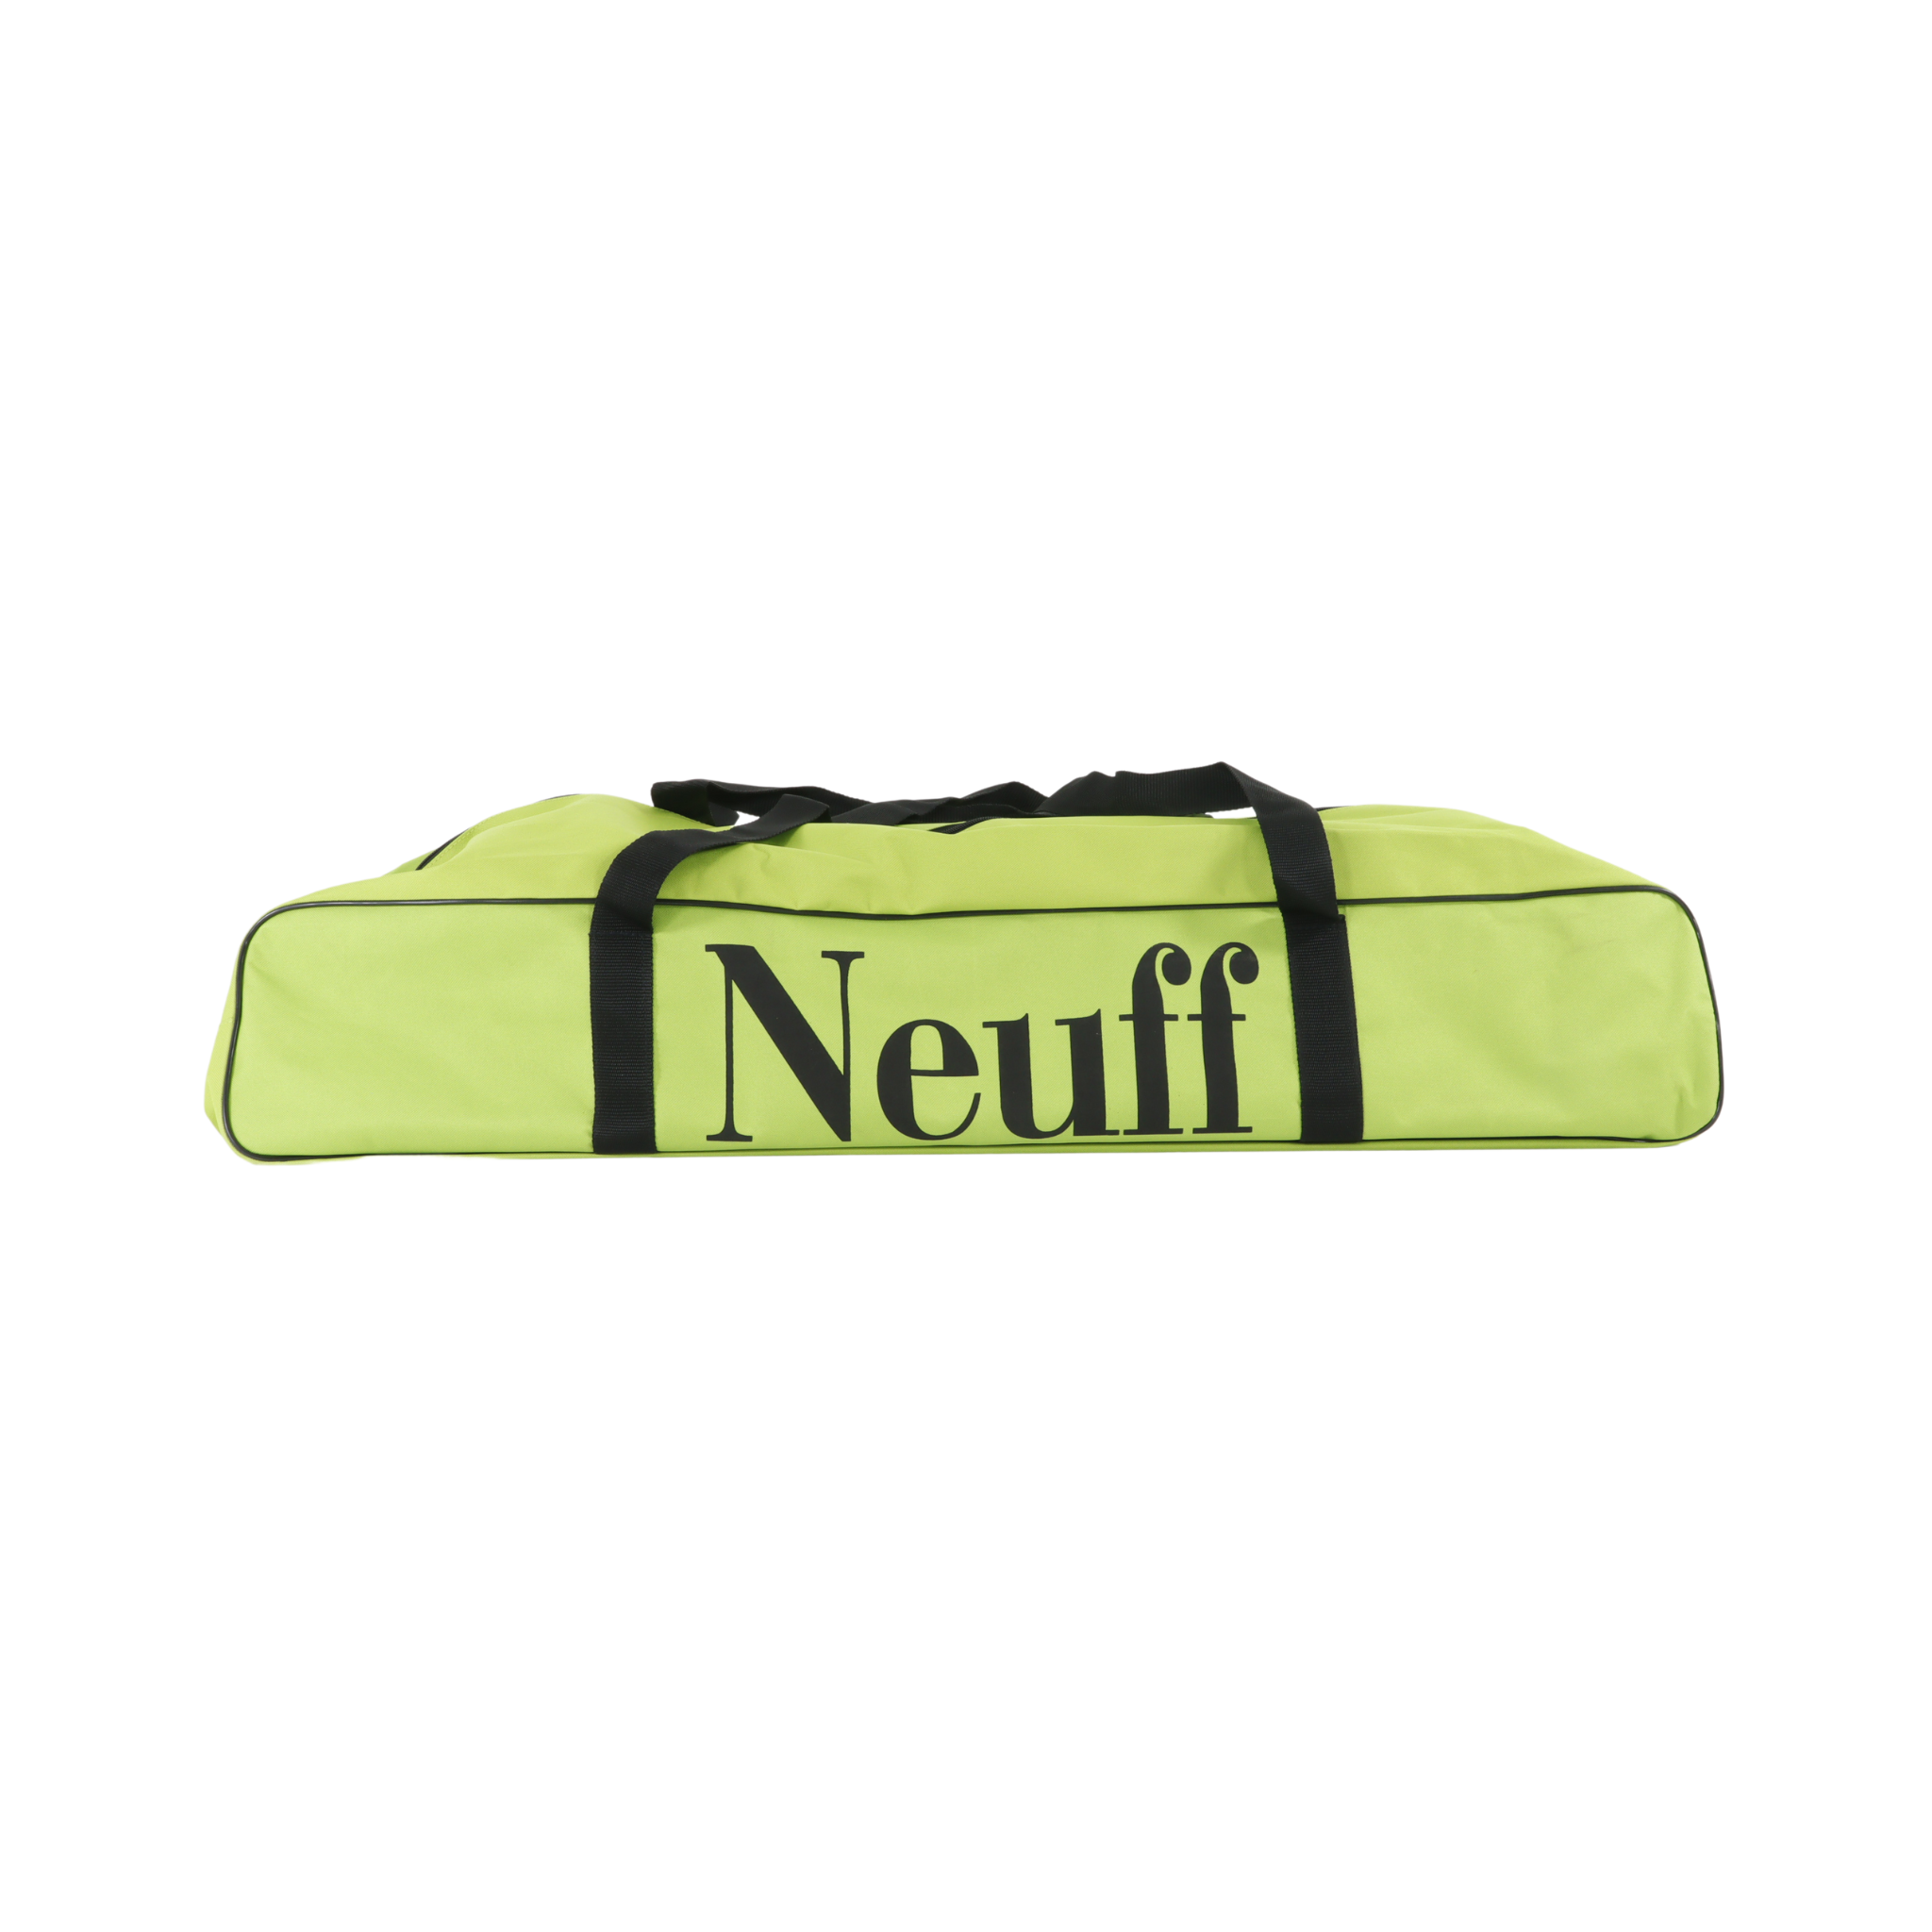 Neuff Starting Block Bag for sprint blocks | Lime Green bag with Black Neuff Branding